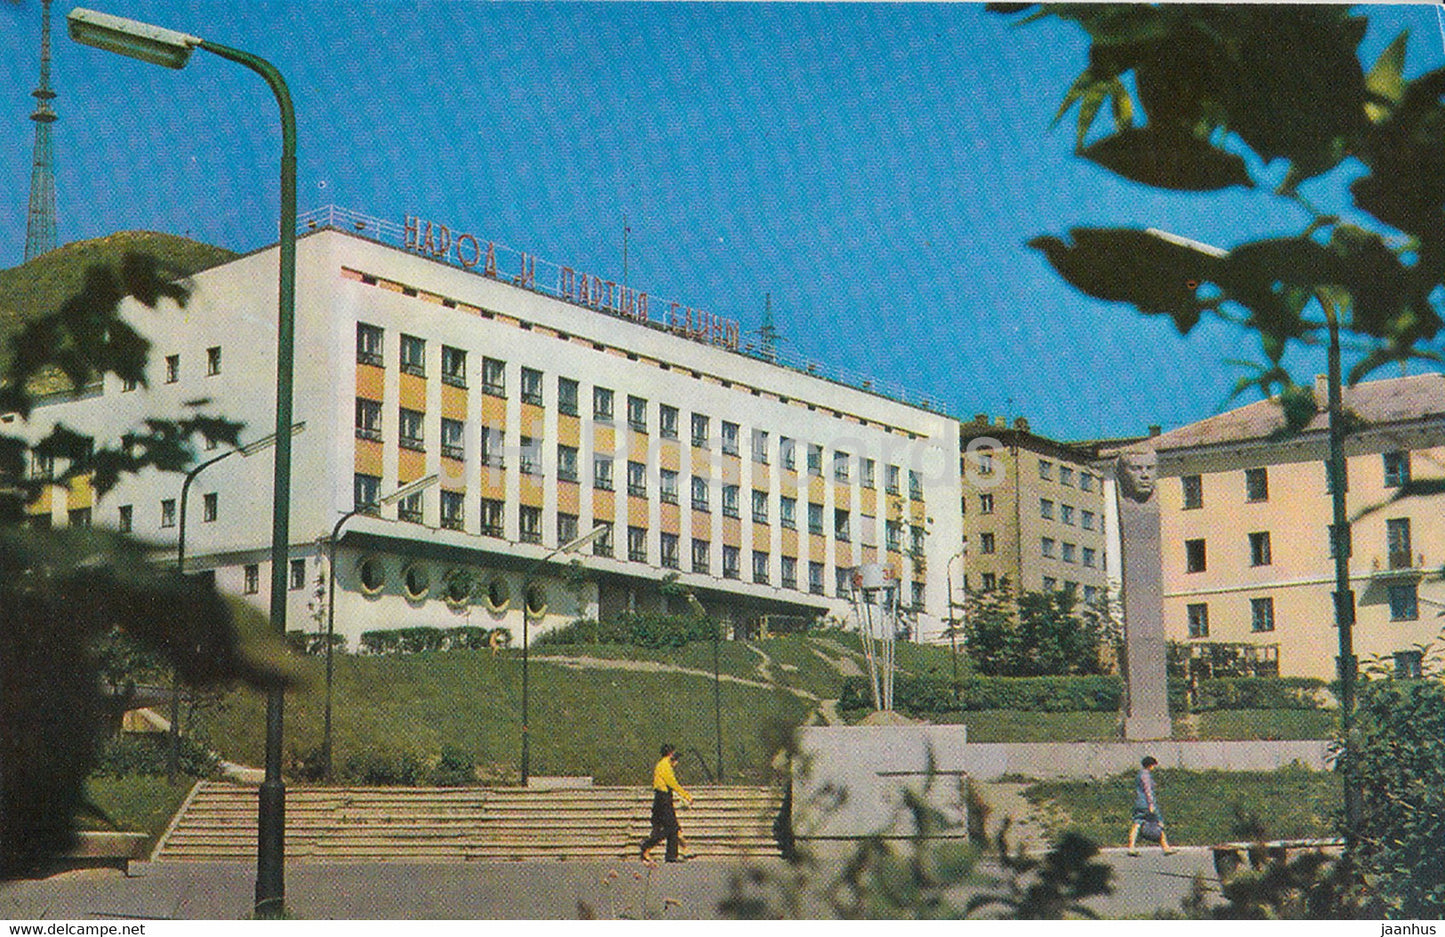 Vladivostok - House of Radio - 1973 - Russia USSR - unused - JH Postcards